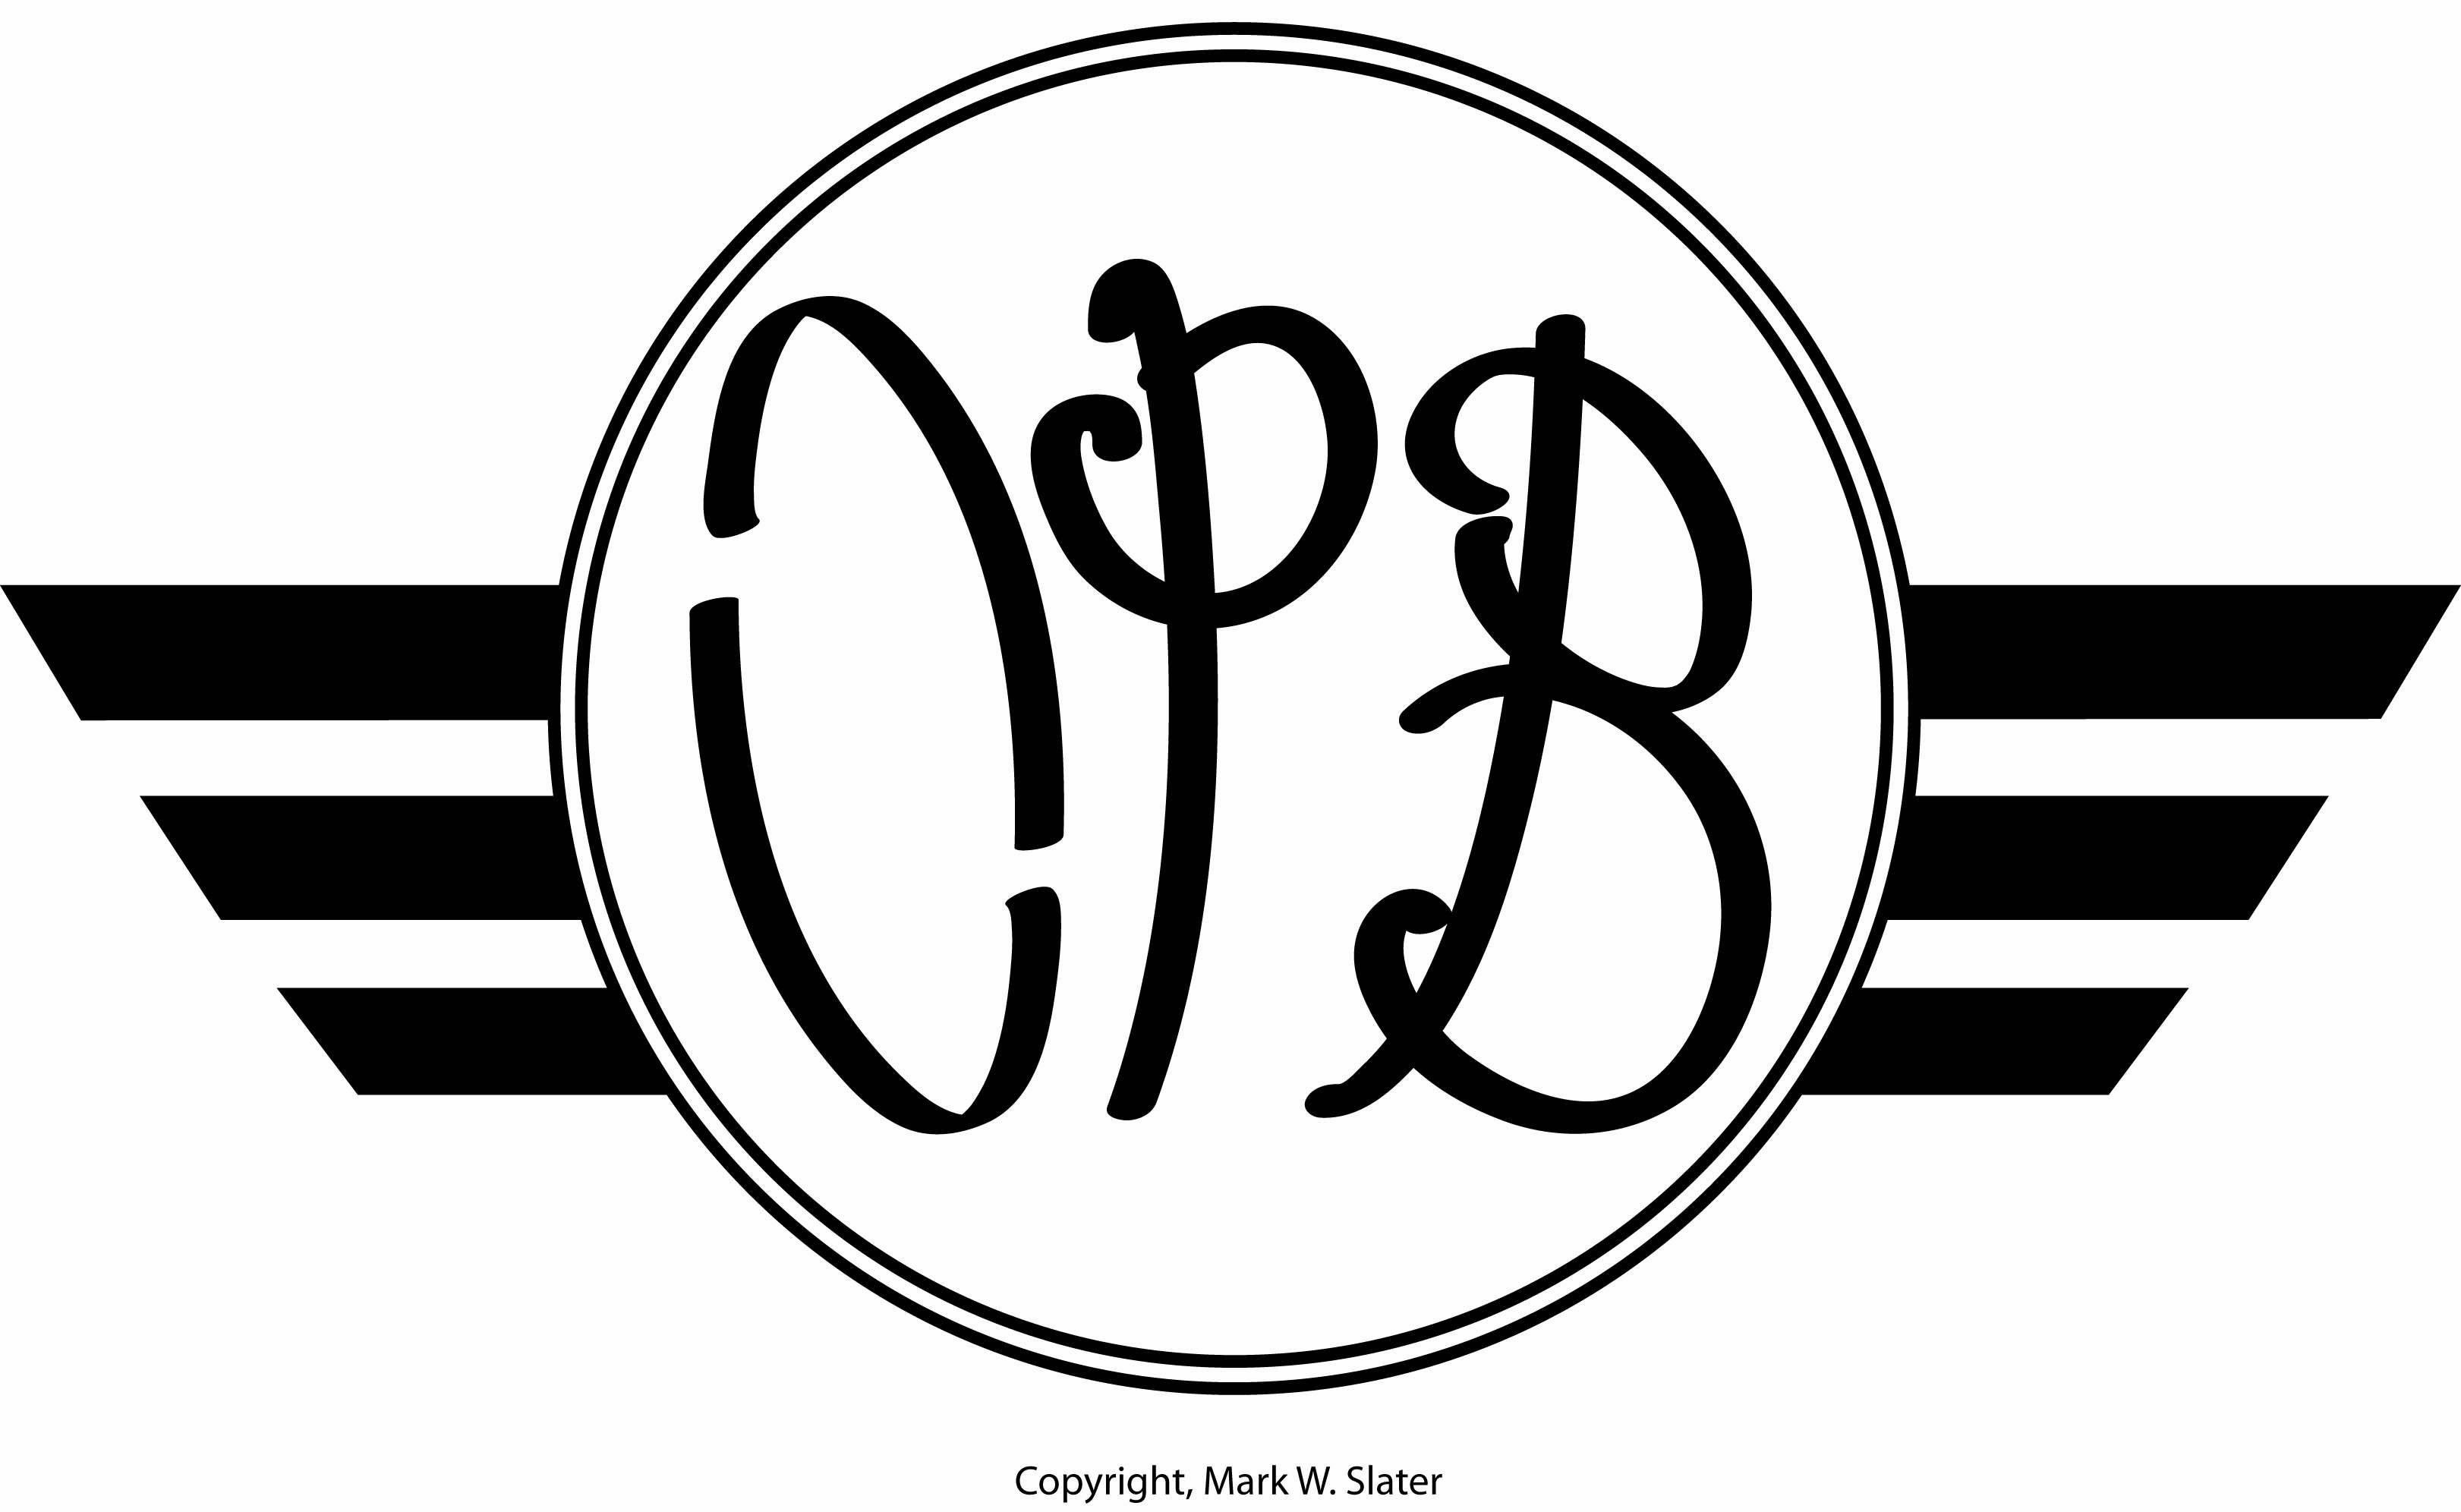 OPB Logo - OPB; Artisanal craft brewing. Natural Line Studio